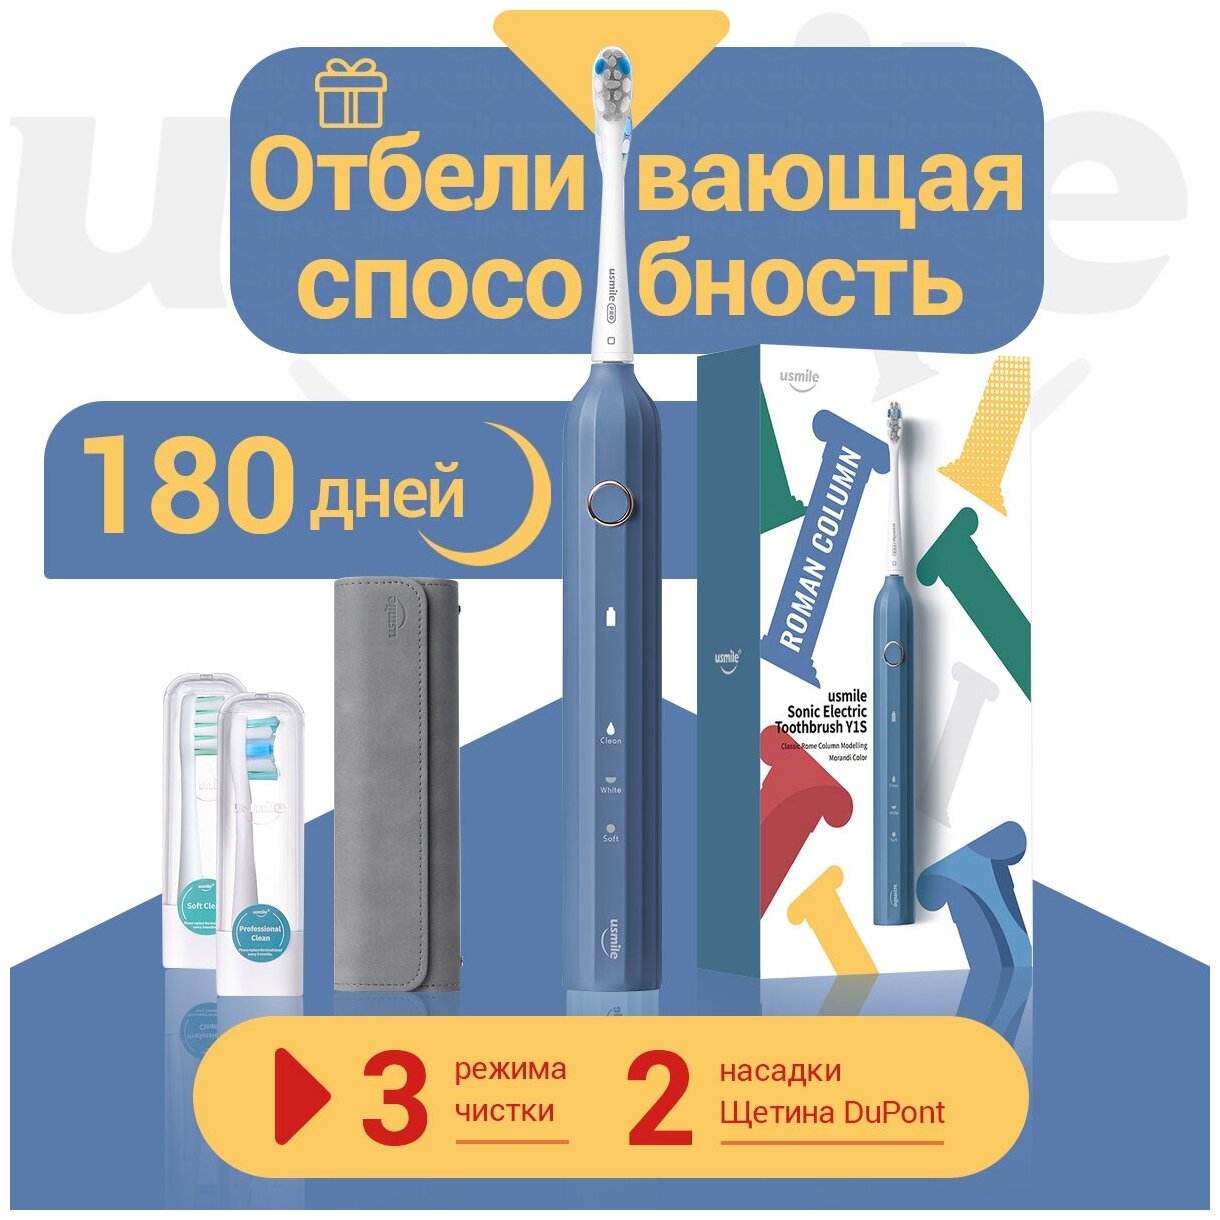 Электрическая зубная щетка usmile Y1S синего цвета, время автономной работы 180 дней, 3 режима, кожаный футляр для хранения в подарок